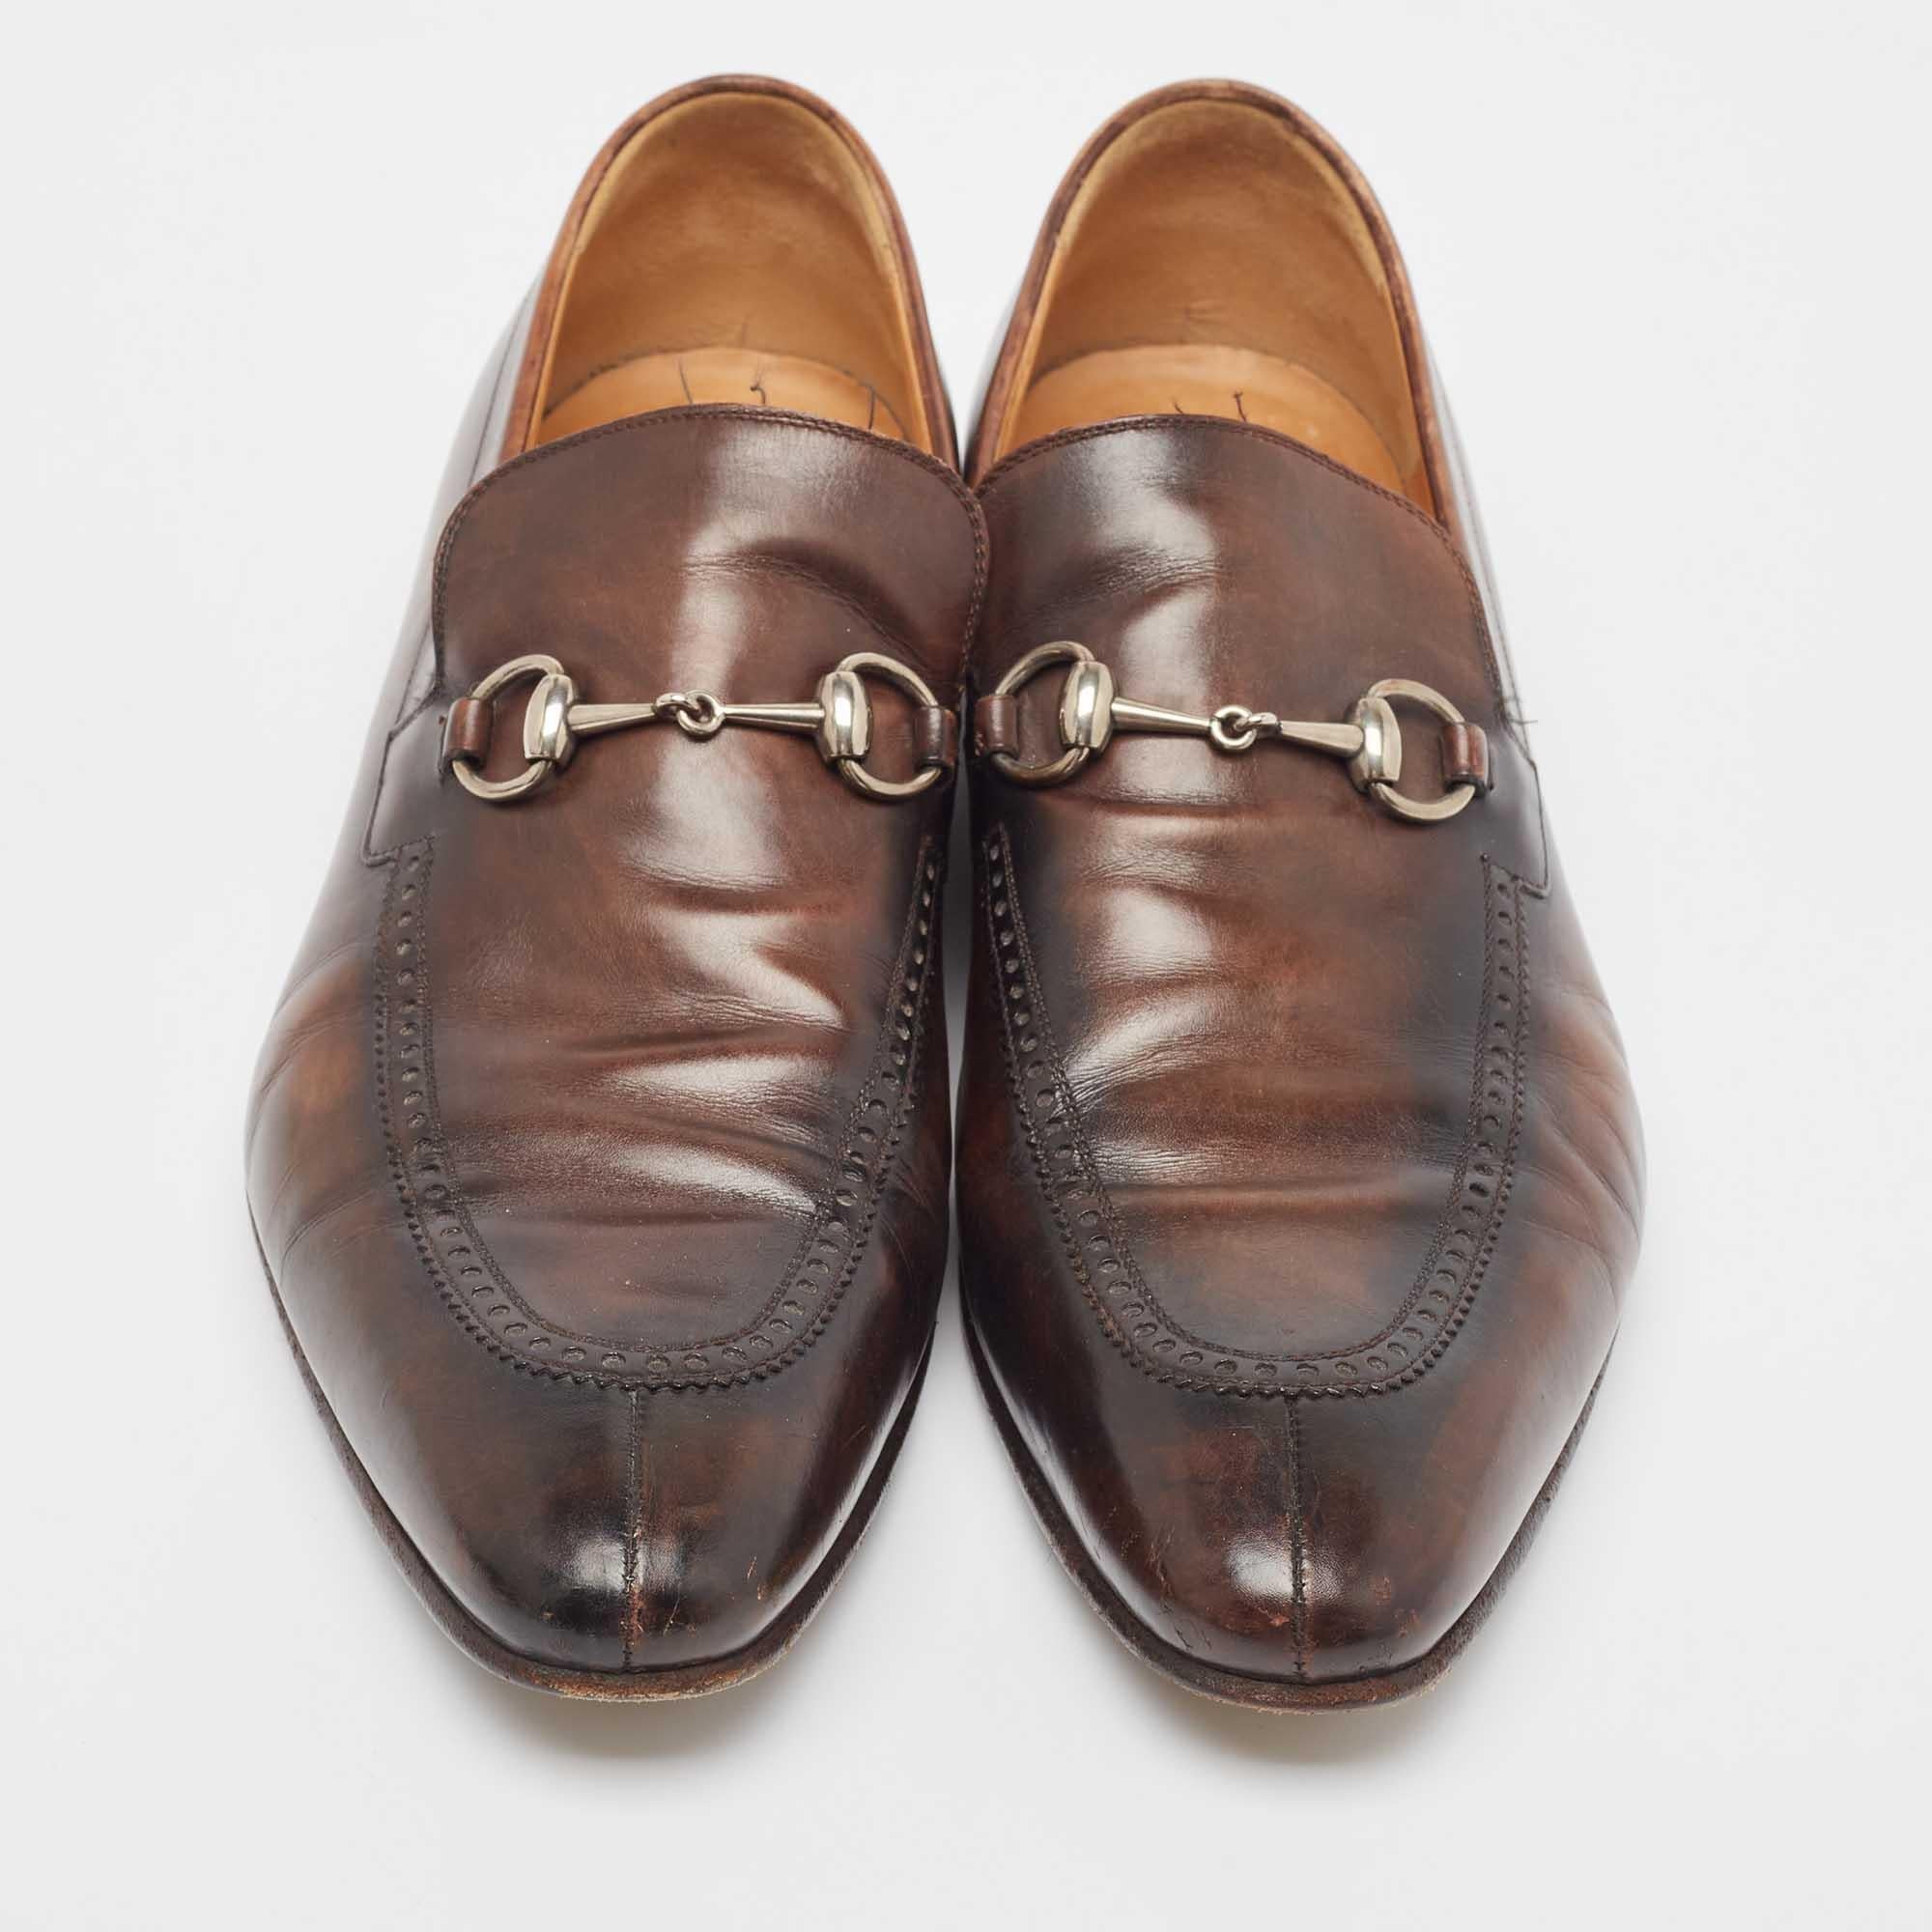 Diese Gucci Horsebit-Schuhe sorgen für ein modisches Ergebnis. Diese aus Leder gefertigten Schuhe sind ebenso haltbar wie ansprechend.

Enthält: Original-Staubbeutel

